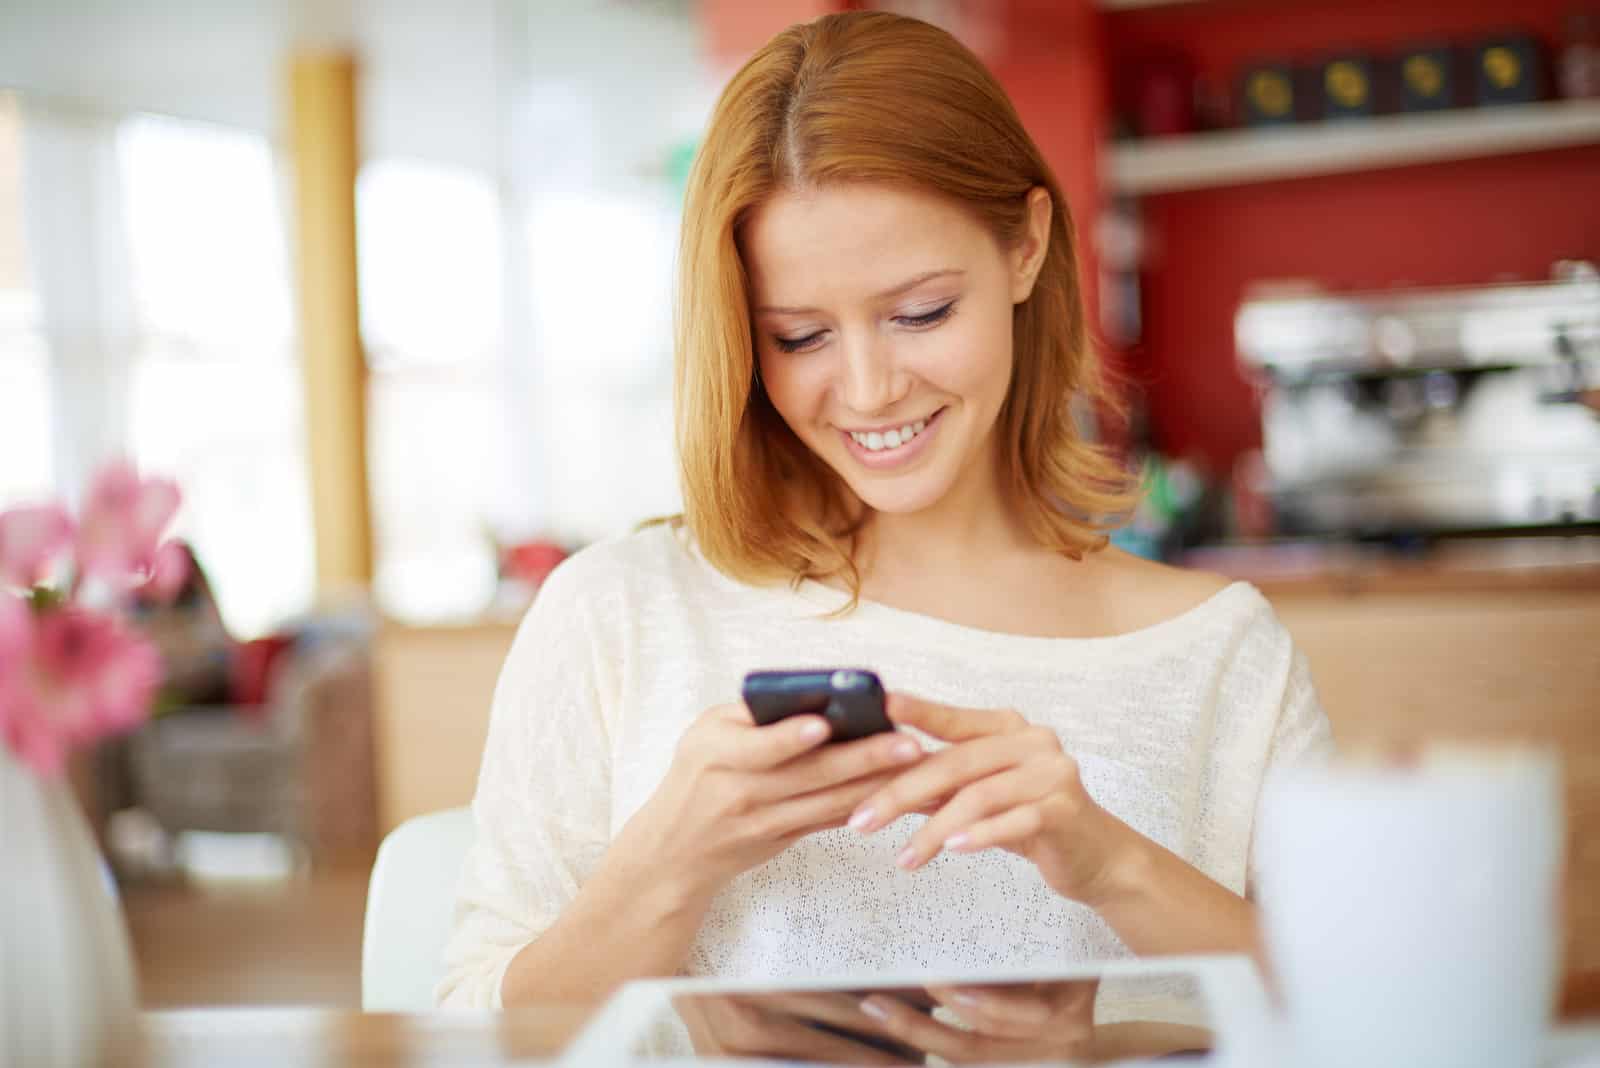 una mujer sonriente está sentada y sosteniendo un teléfono en la mano